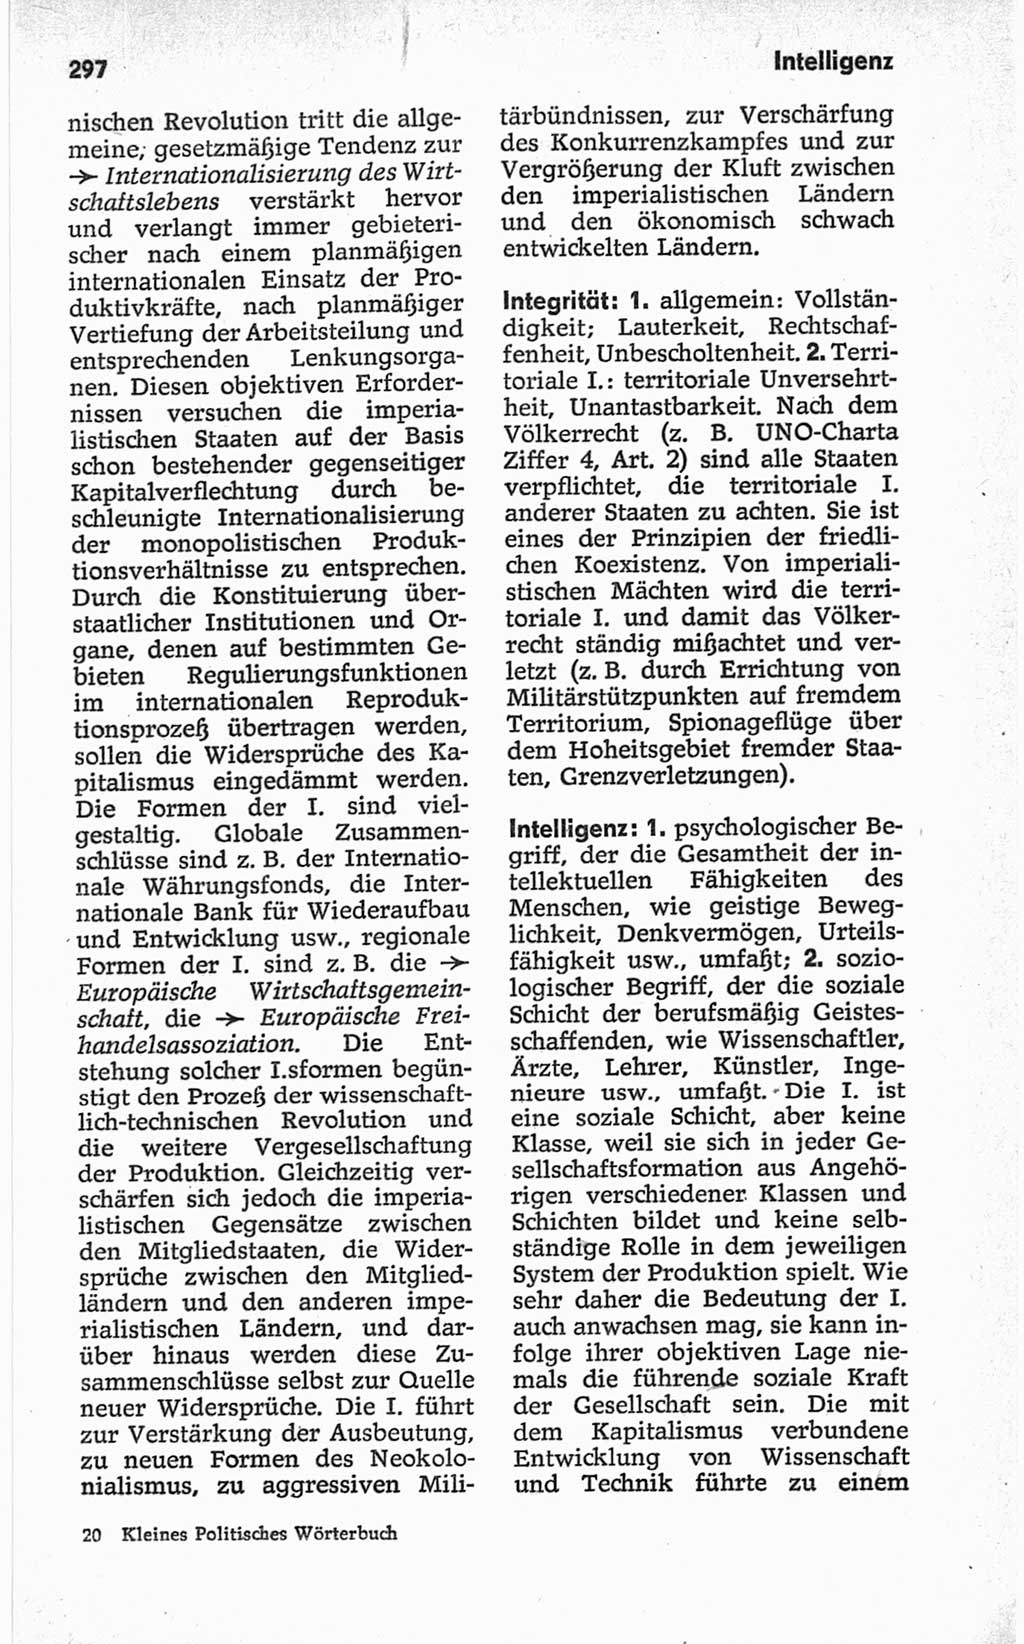 Kleines politisches Wörterbuch [Deutsche Demokratische Republik (DDR)] 1967, Seite 297 (Kl. pol. Wb. DDR 1967, S. 297)